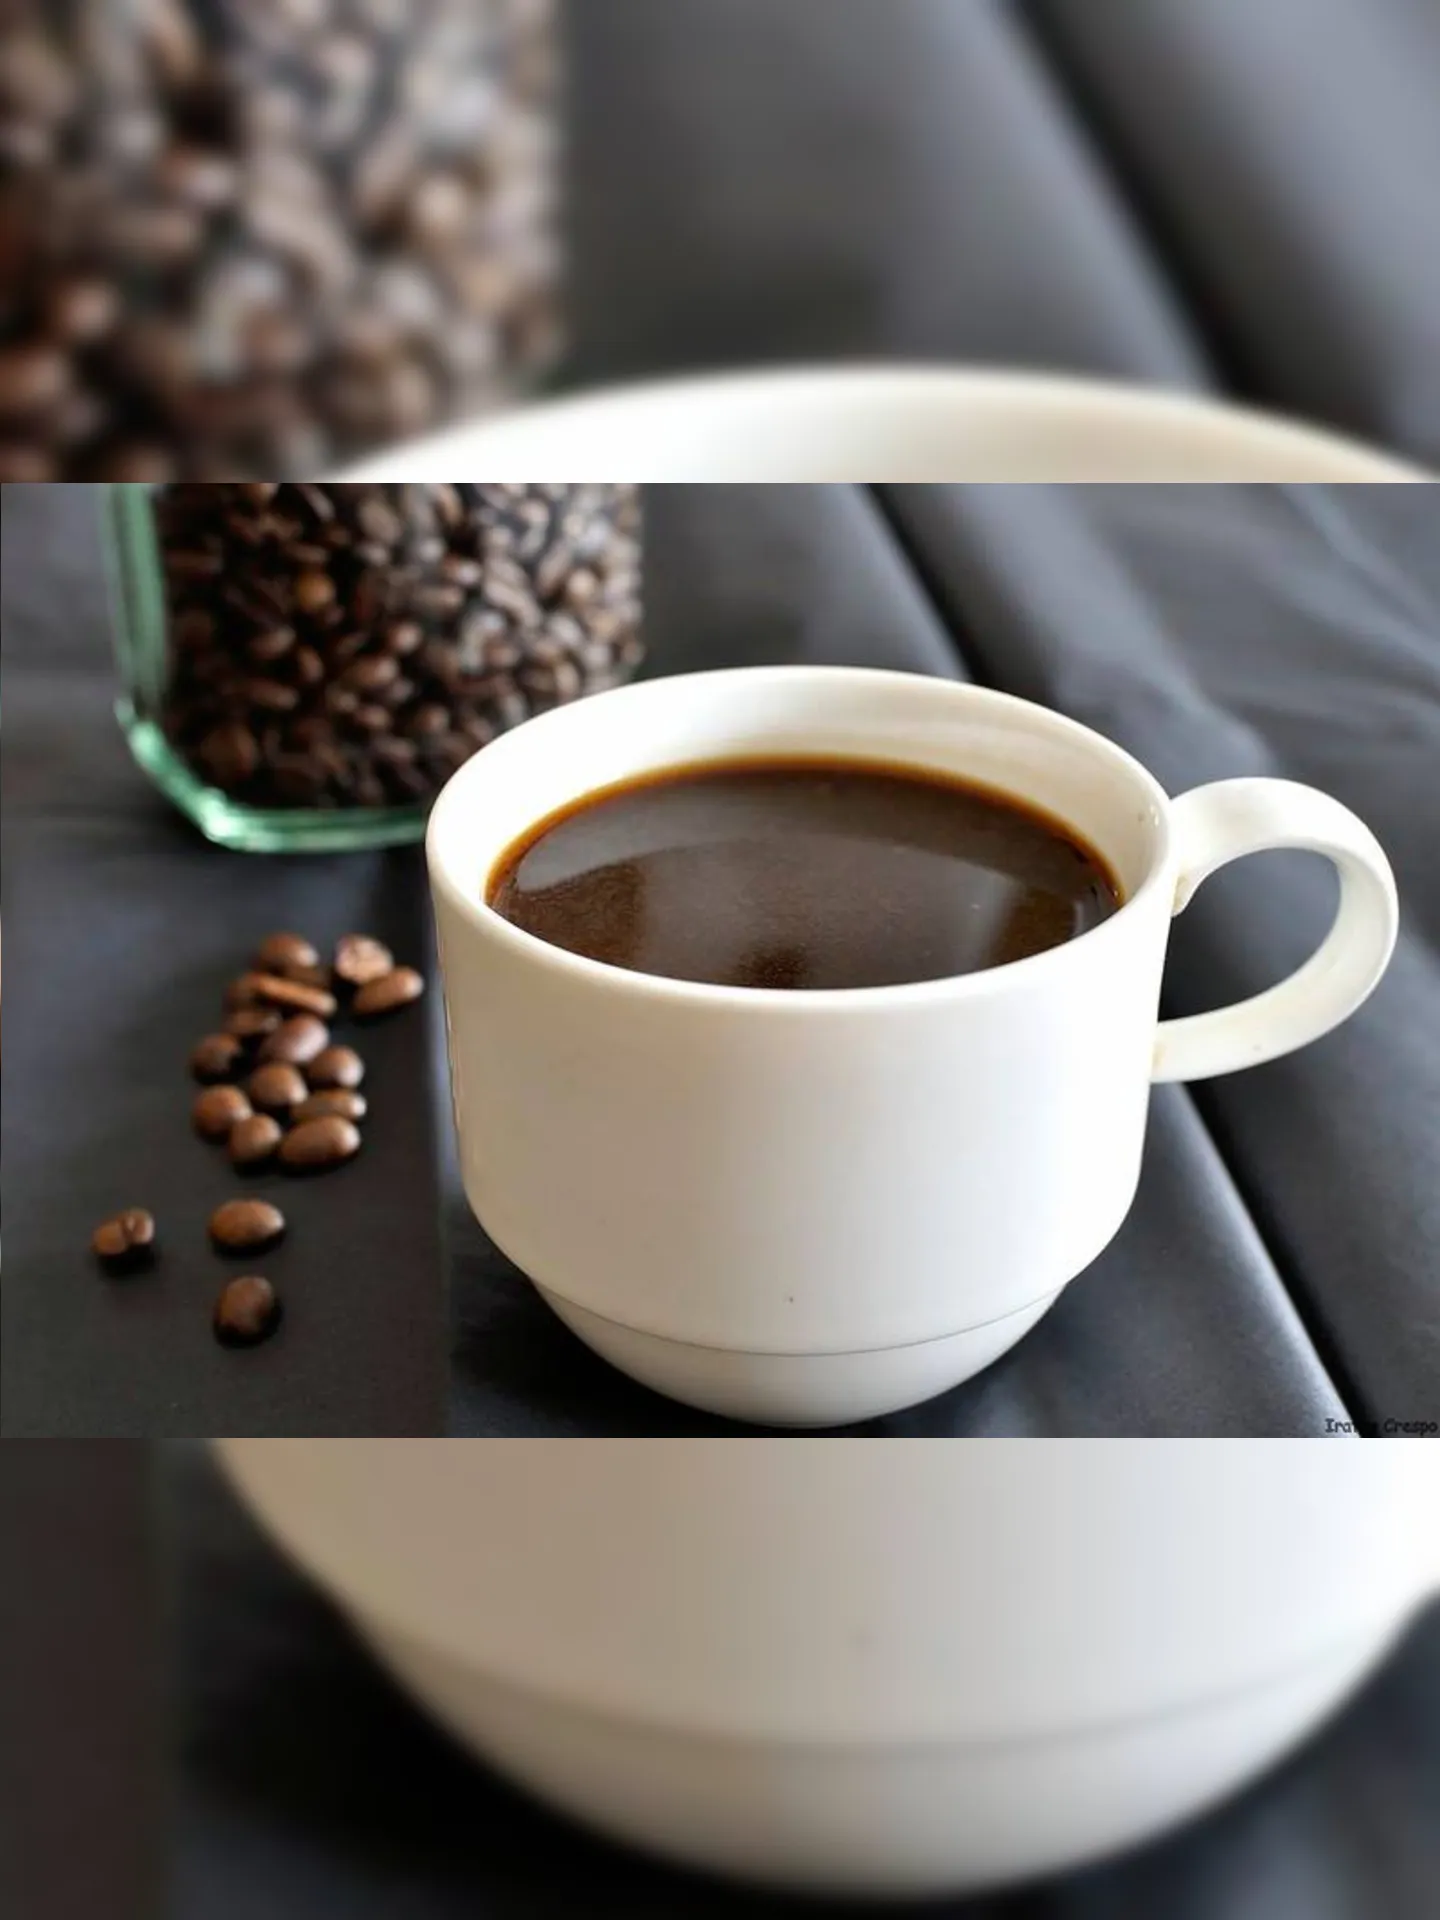 Beber café como forma de animar você de um sono pode ter um efeito negativo no controle da glicose no sangue